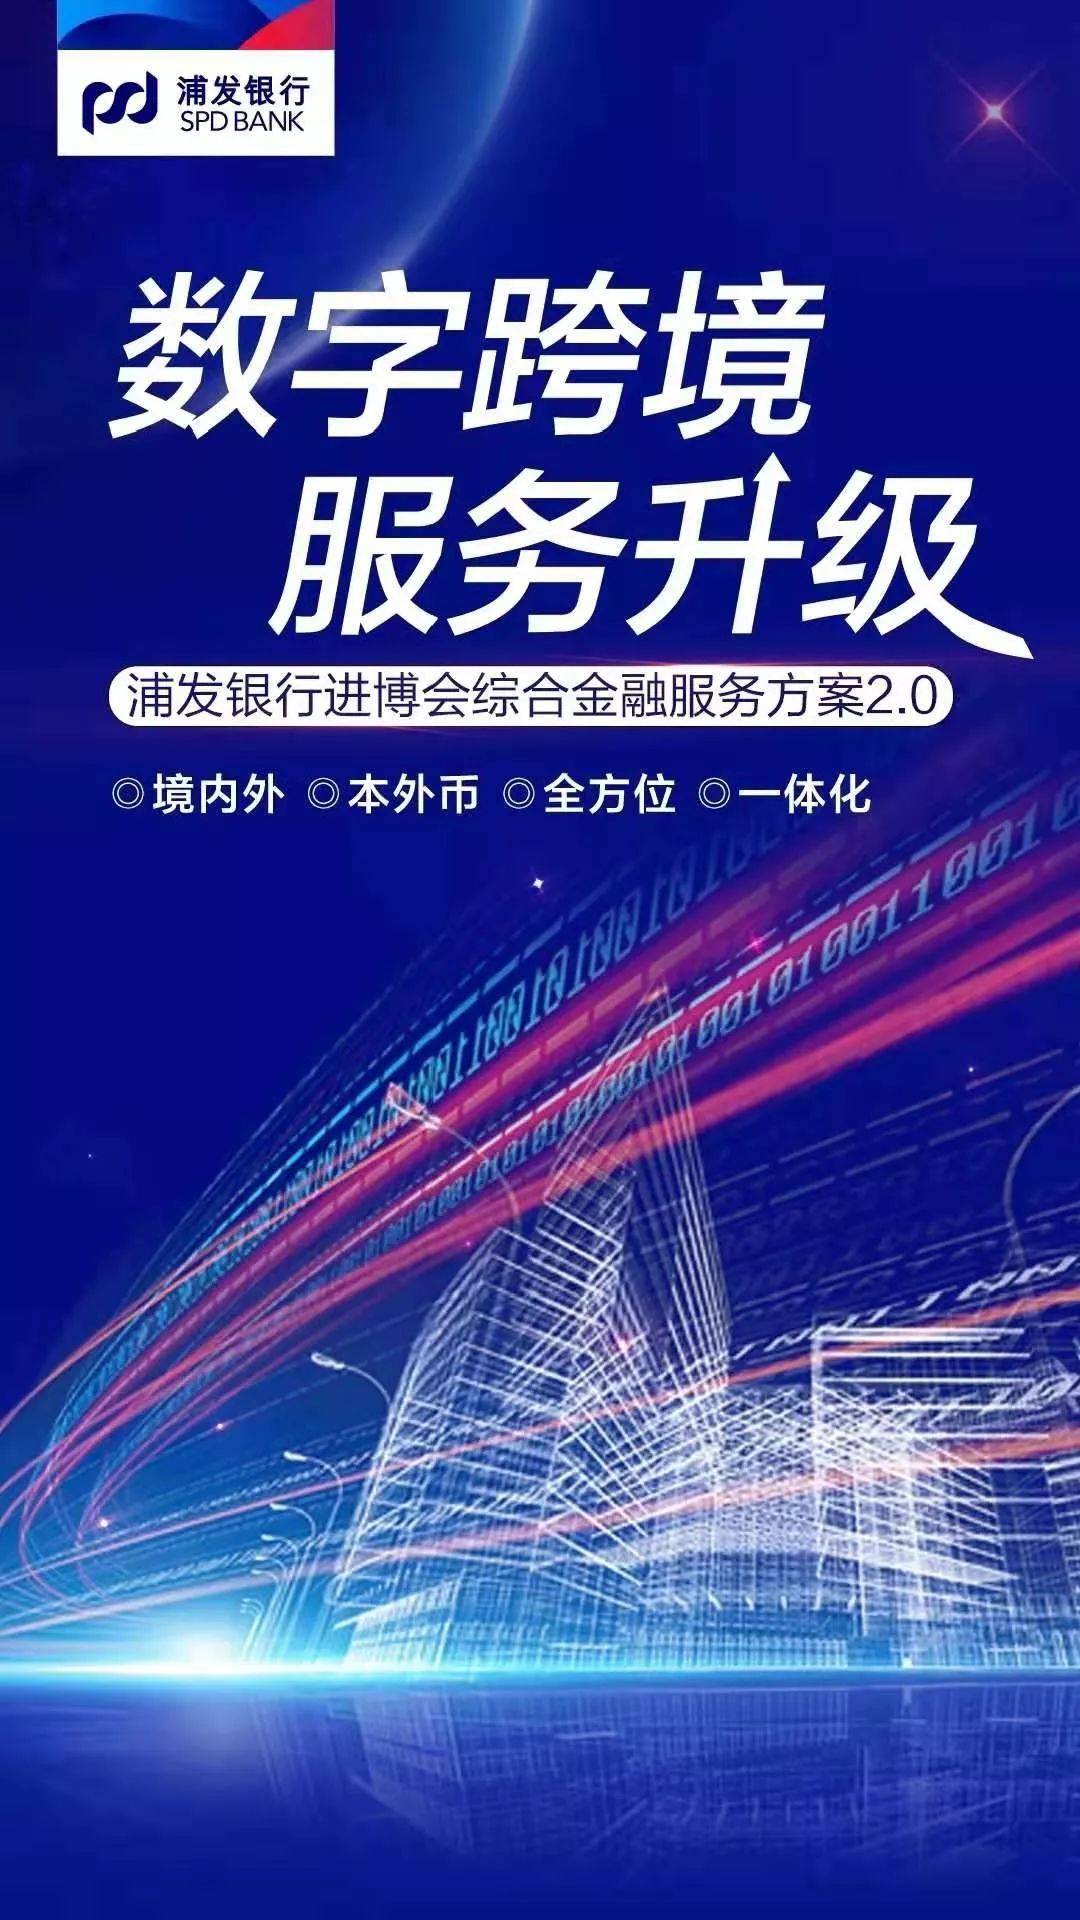 浦发银行发布《进博会综合金融服务方案2.0》(上海跨境通)